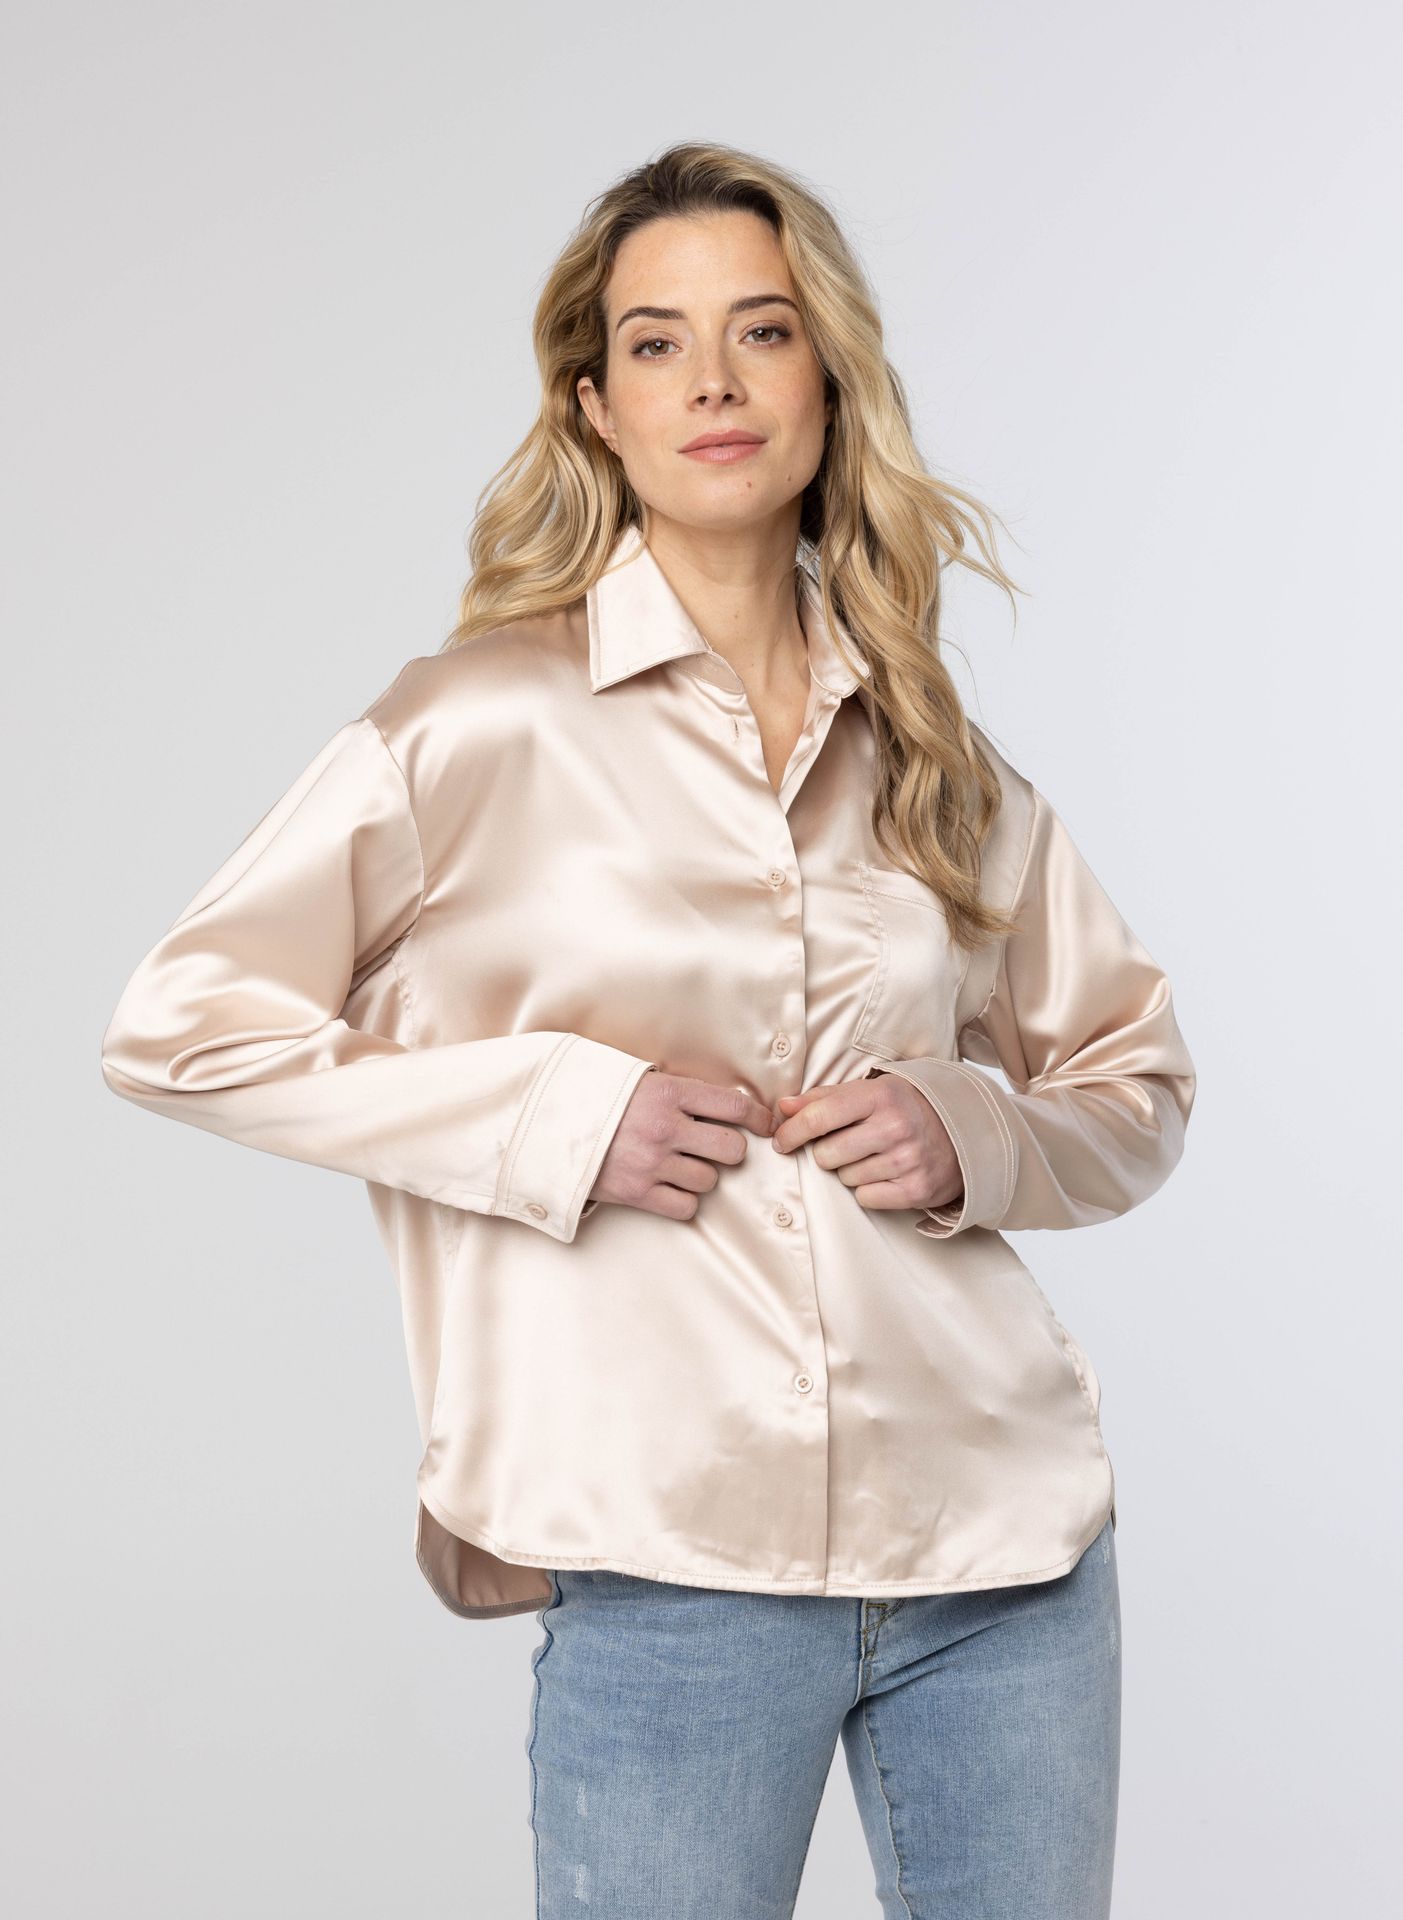 Norah Glanzende ecru blouse ecru 214196-102